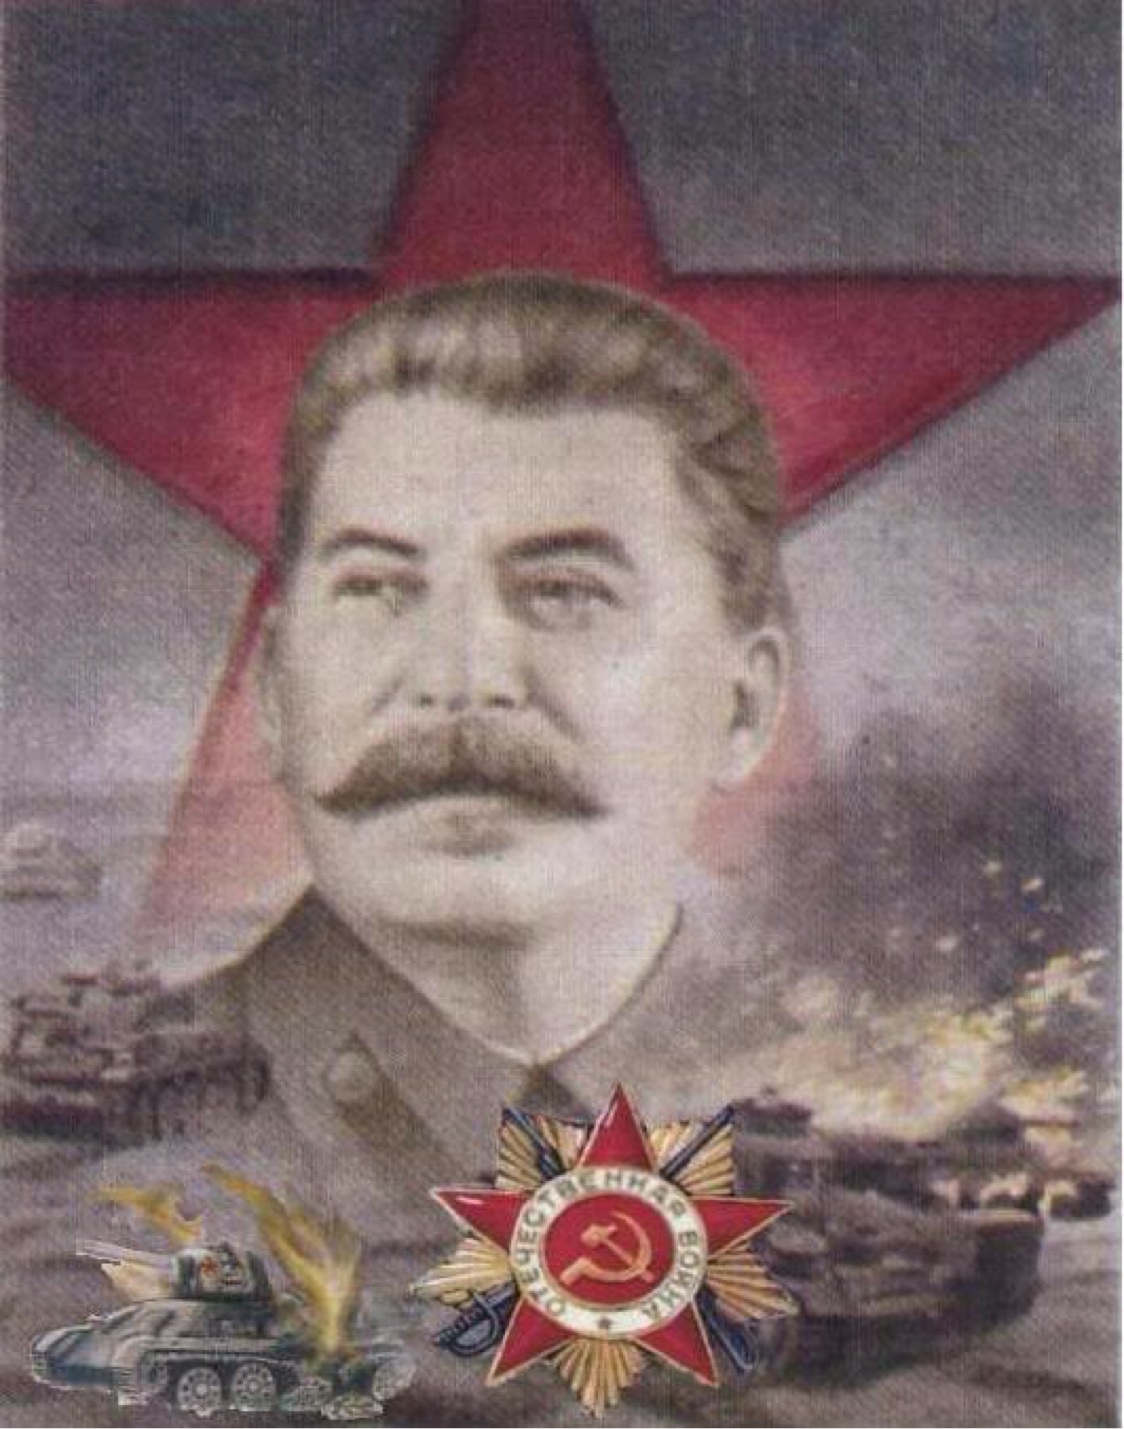 Joseph Stalin , HD Wallpaper & Backgrounds